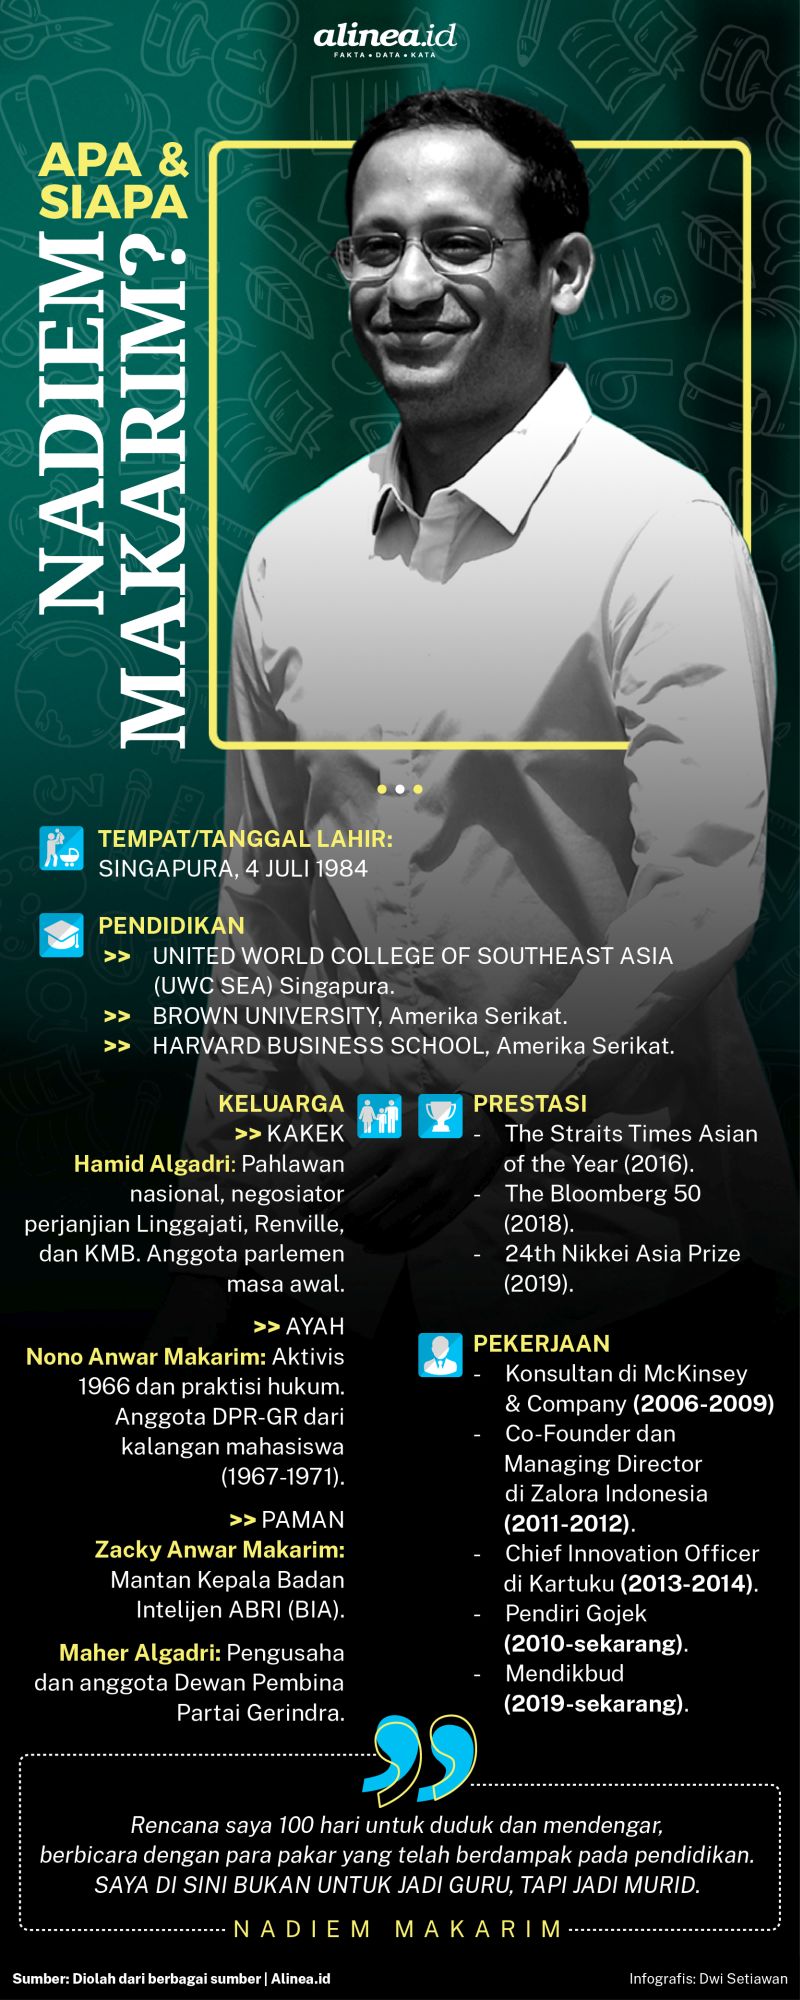 Nadiem Makarim sukses membawa Gojek sebagai perusahaan bergengsi. Alinea.id/Dwi Setiawan.